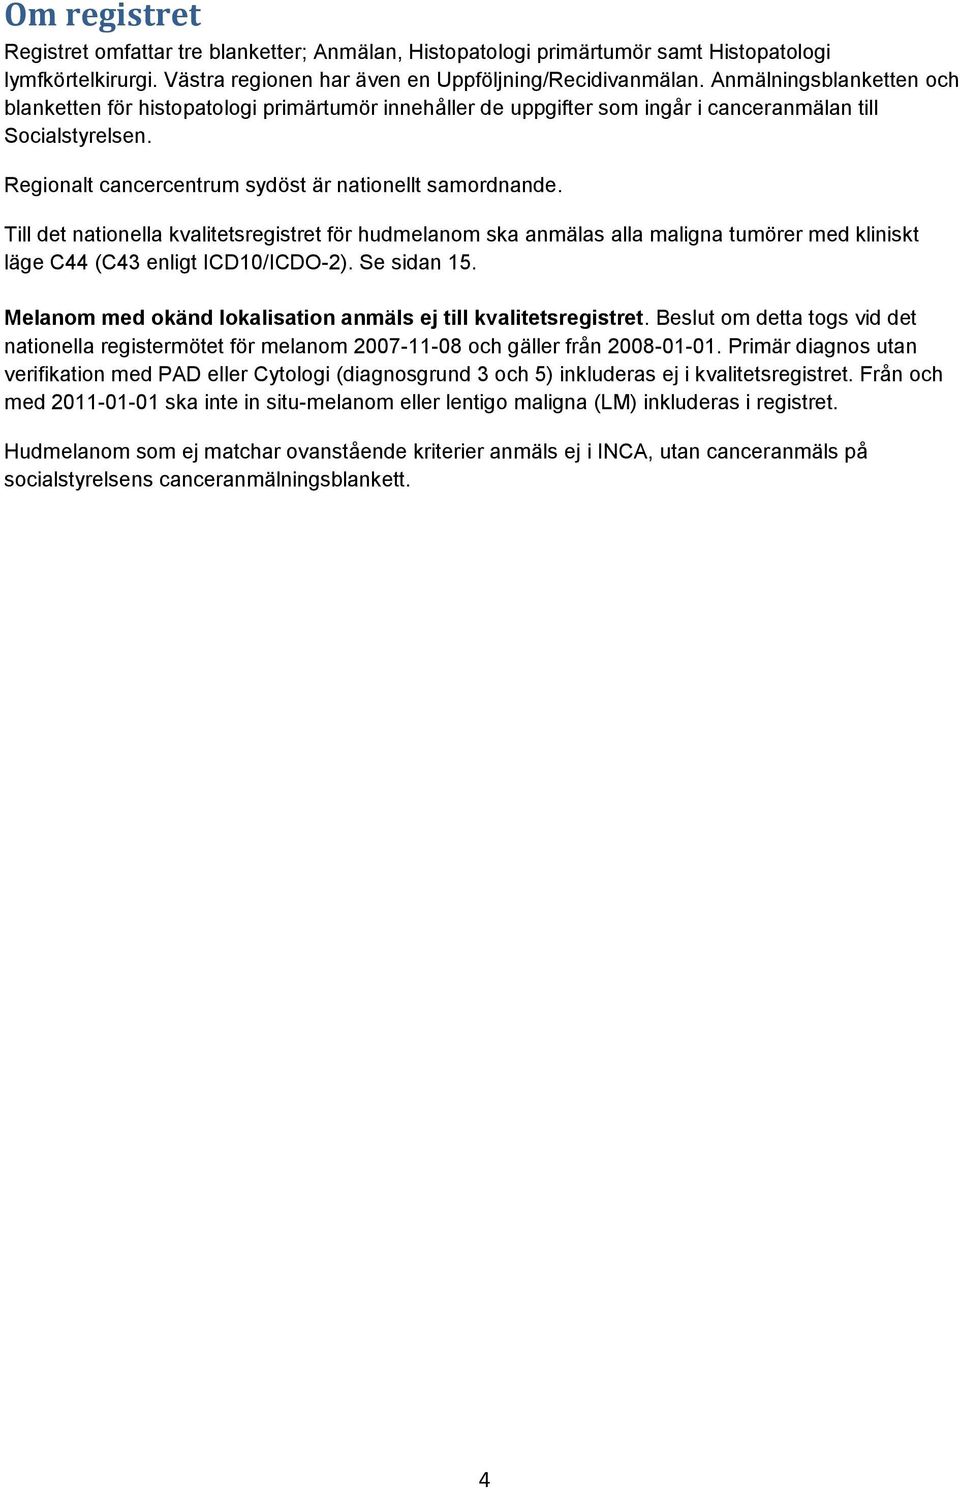 Till det nationella kvalitetsregistret för hudmelanom ska anmälas alla maligna tumörer med kliniskt läge C44 (C43 enligt ICD10/ICDO-2). Se sidan 15.